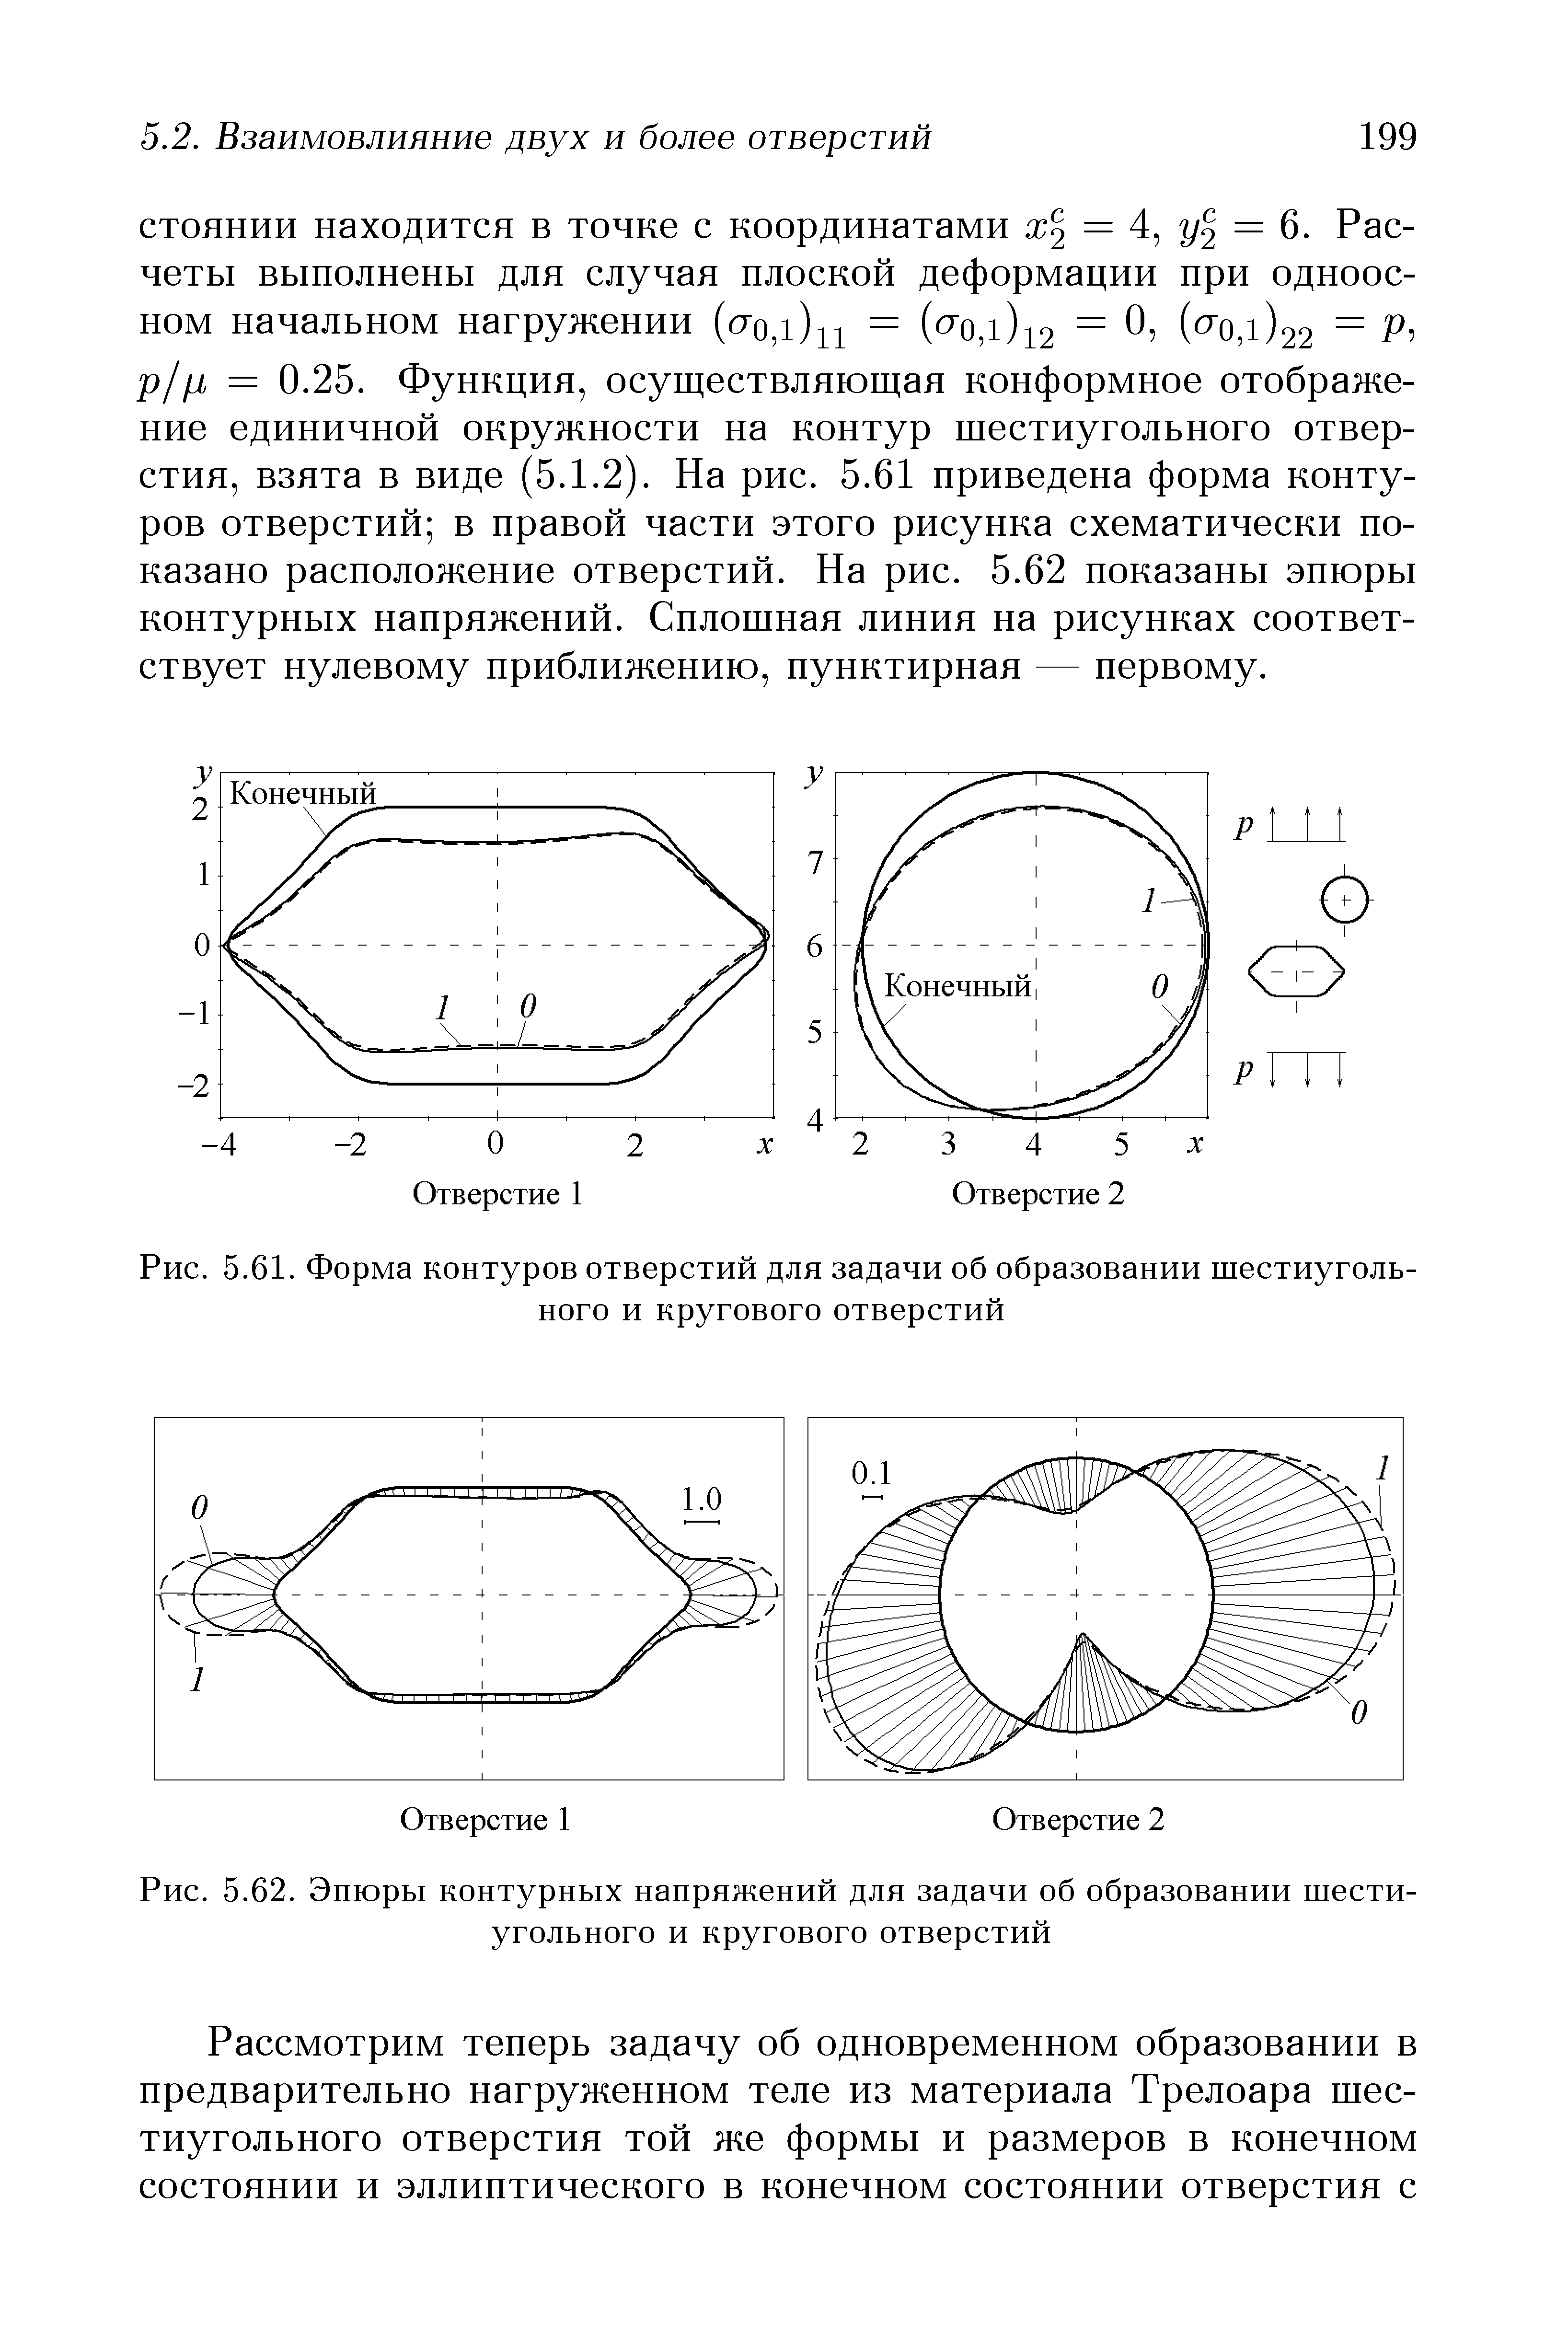 Рис. 5.61. Форма контуров отверстий для задачи об образовании шестиугольного и кругового отверстий
